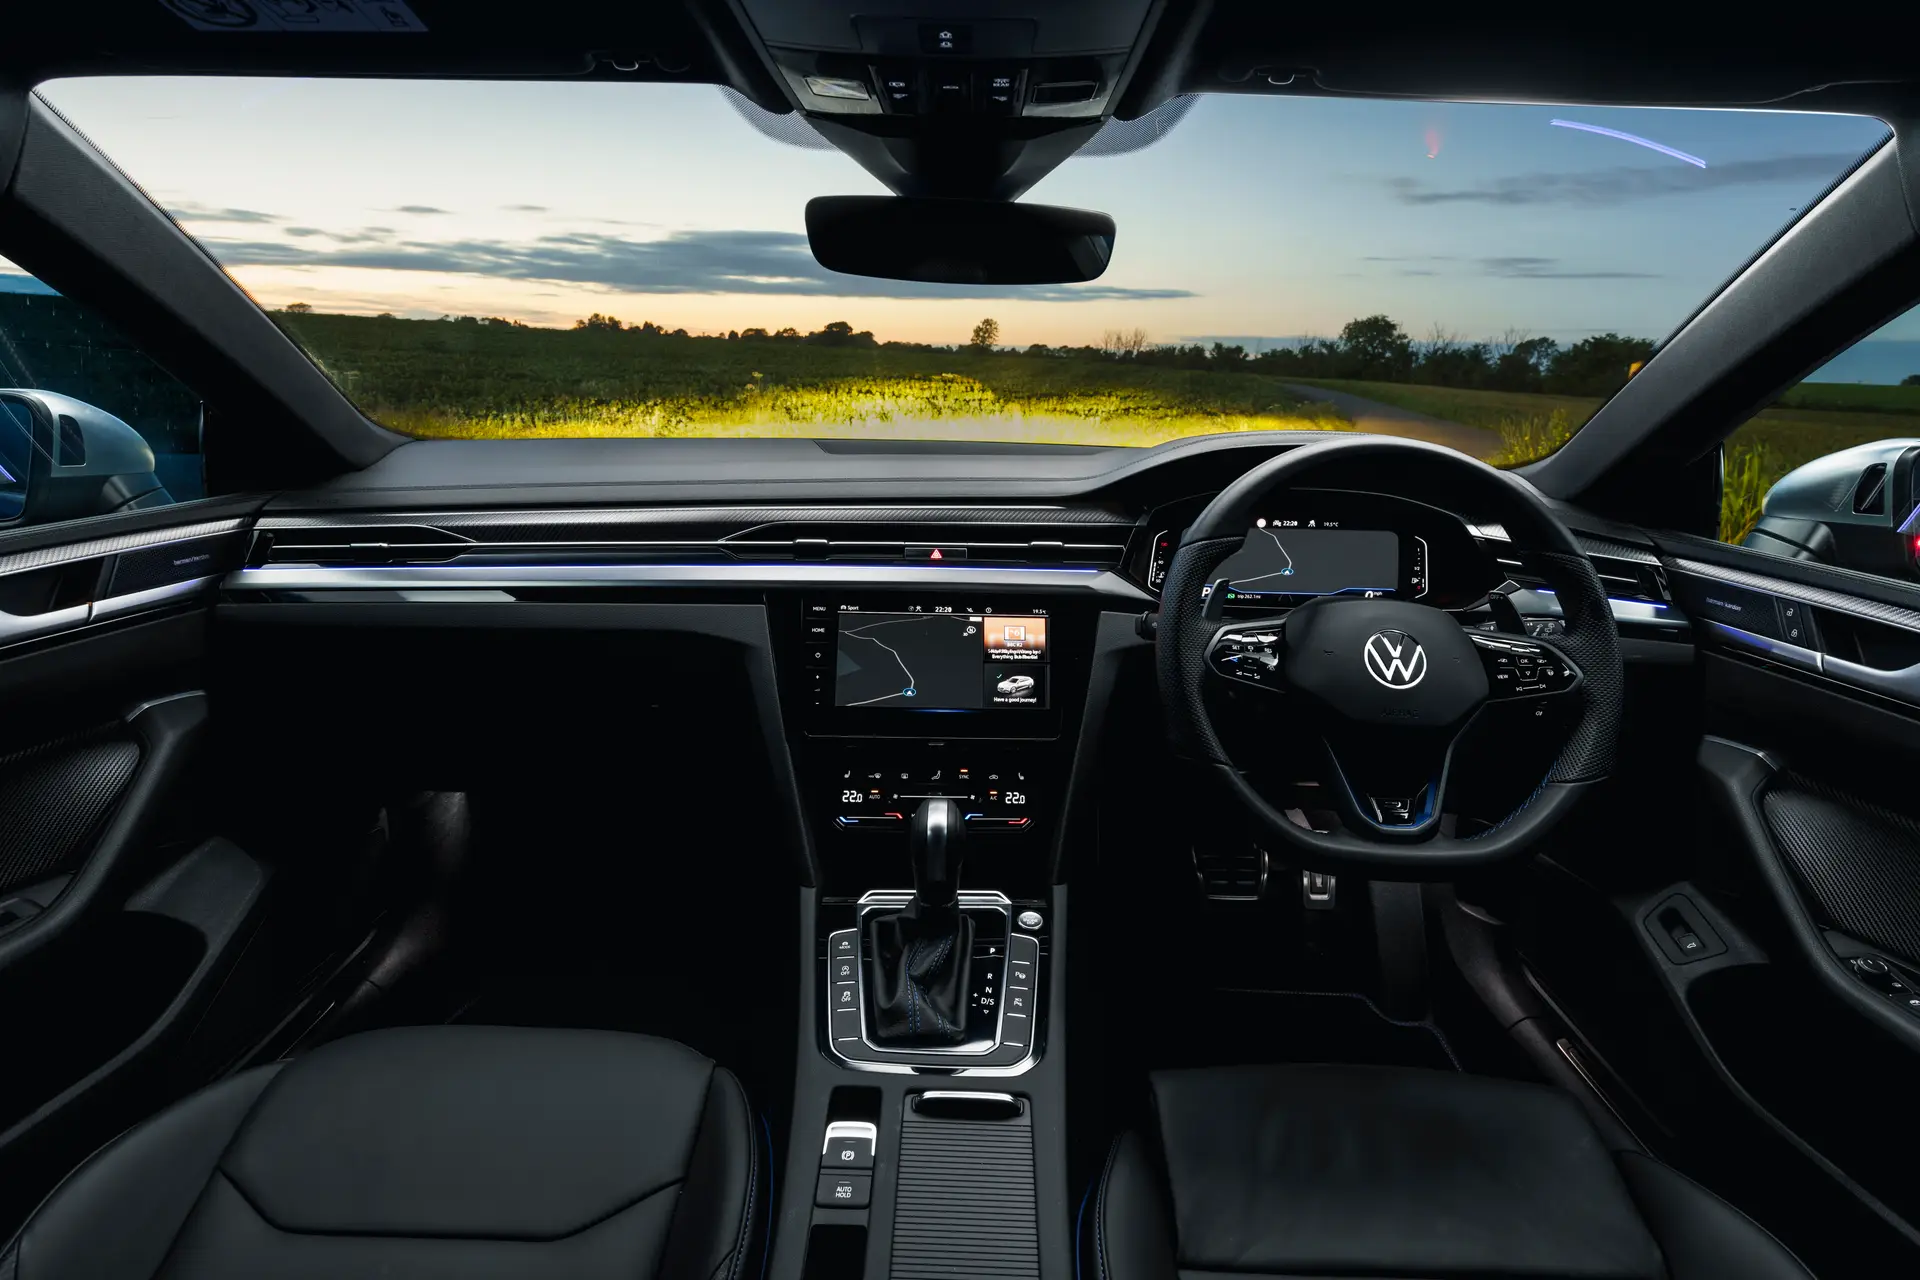 Volkswagen Arteon Shooting Brake Review: Interior